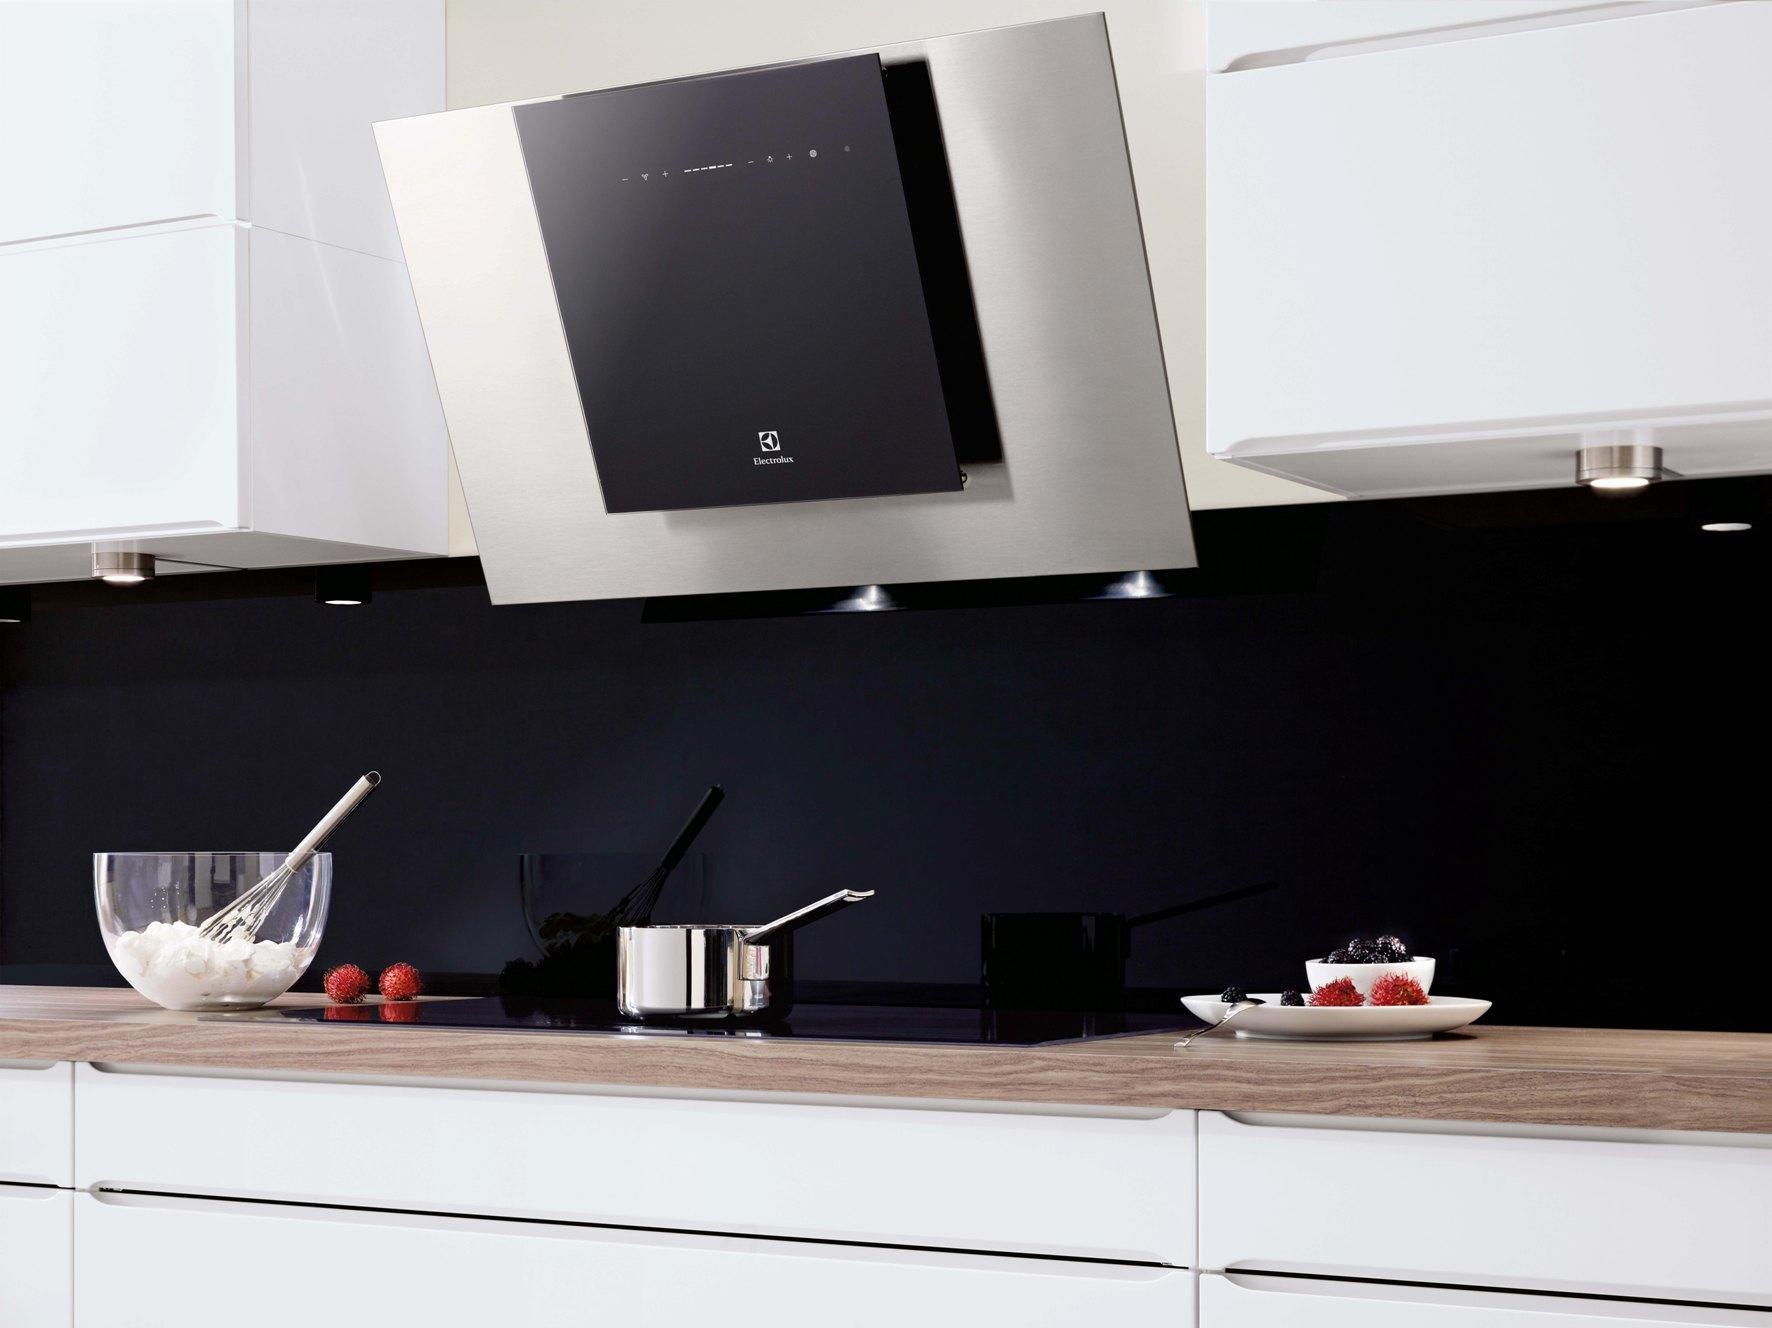 Máy hút mùi Electrolux nổi bật với thiết kế ấn tượng, chất liệu cao cấp đem lại vẻ sang trọng cho không gian bếp